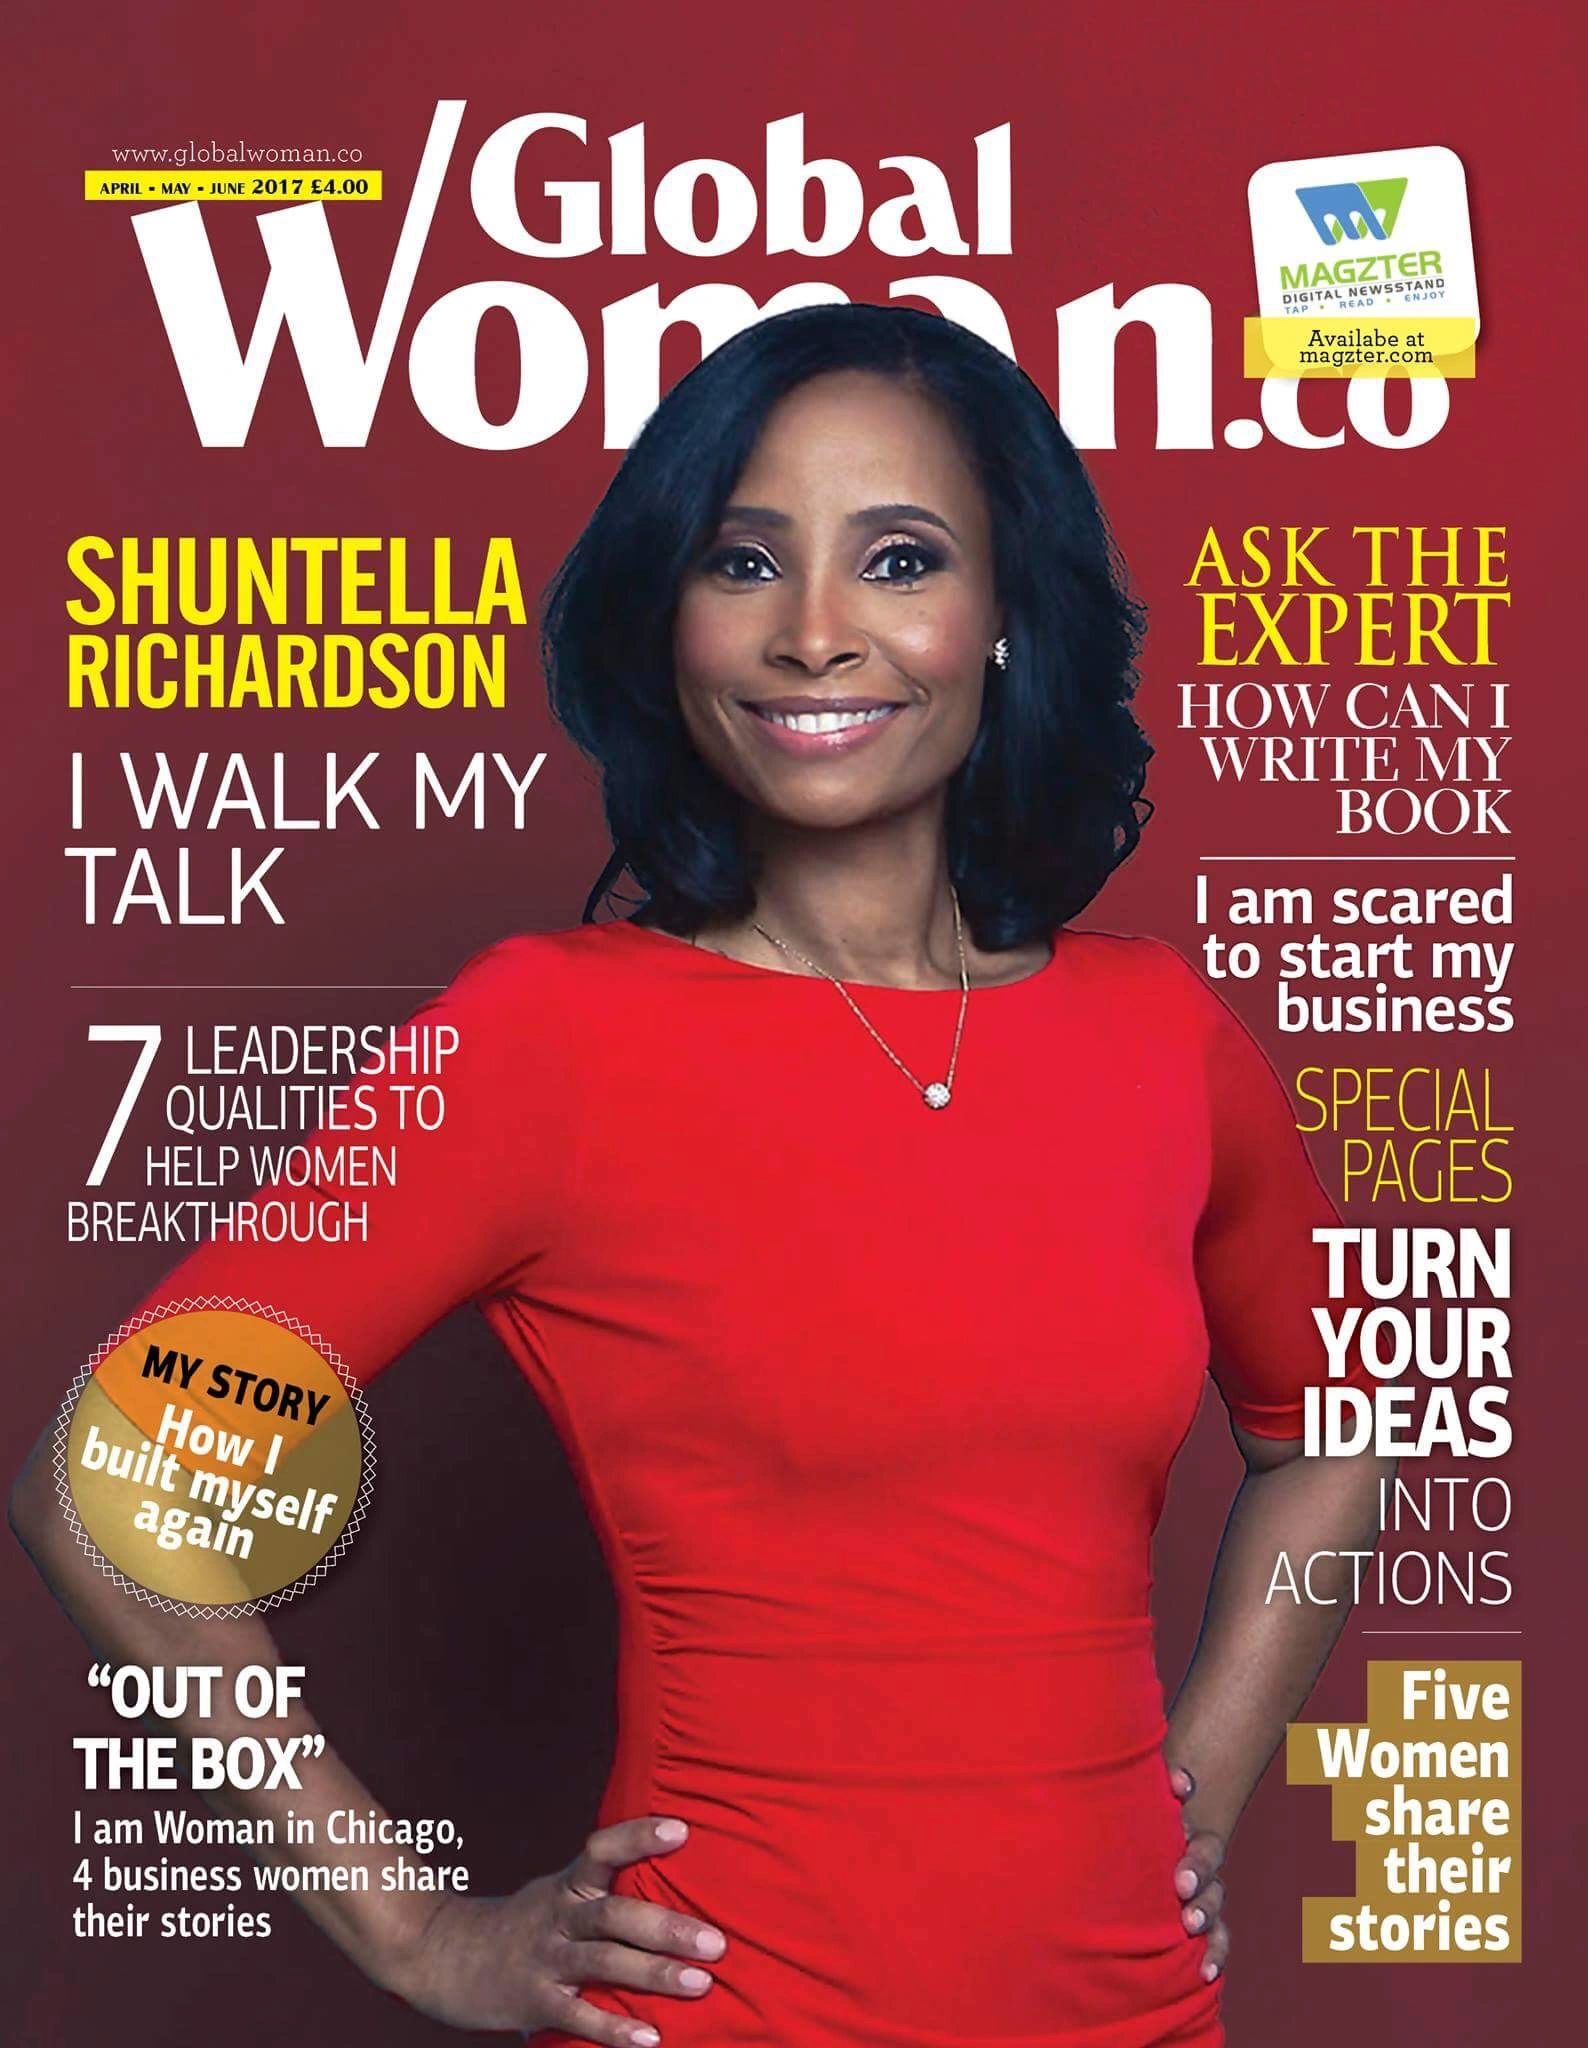 Shuntella Richardson and Global Woman Magazine